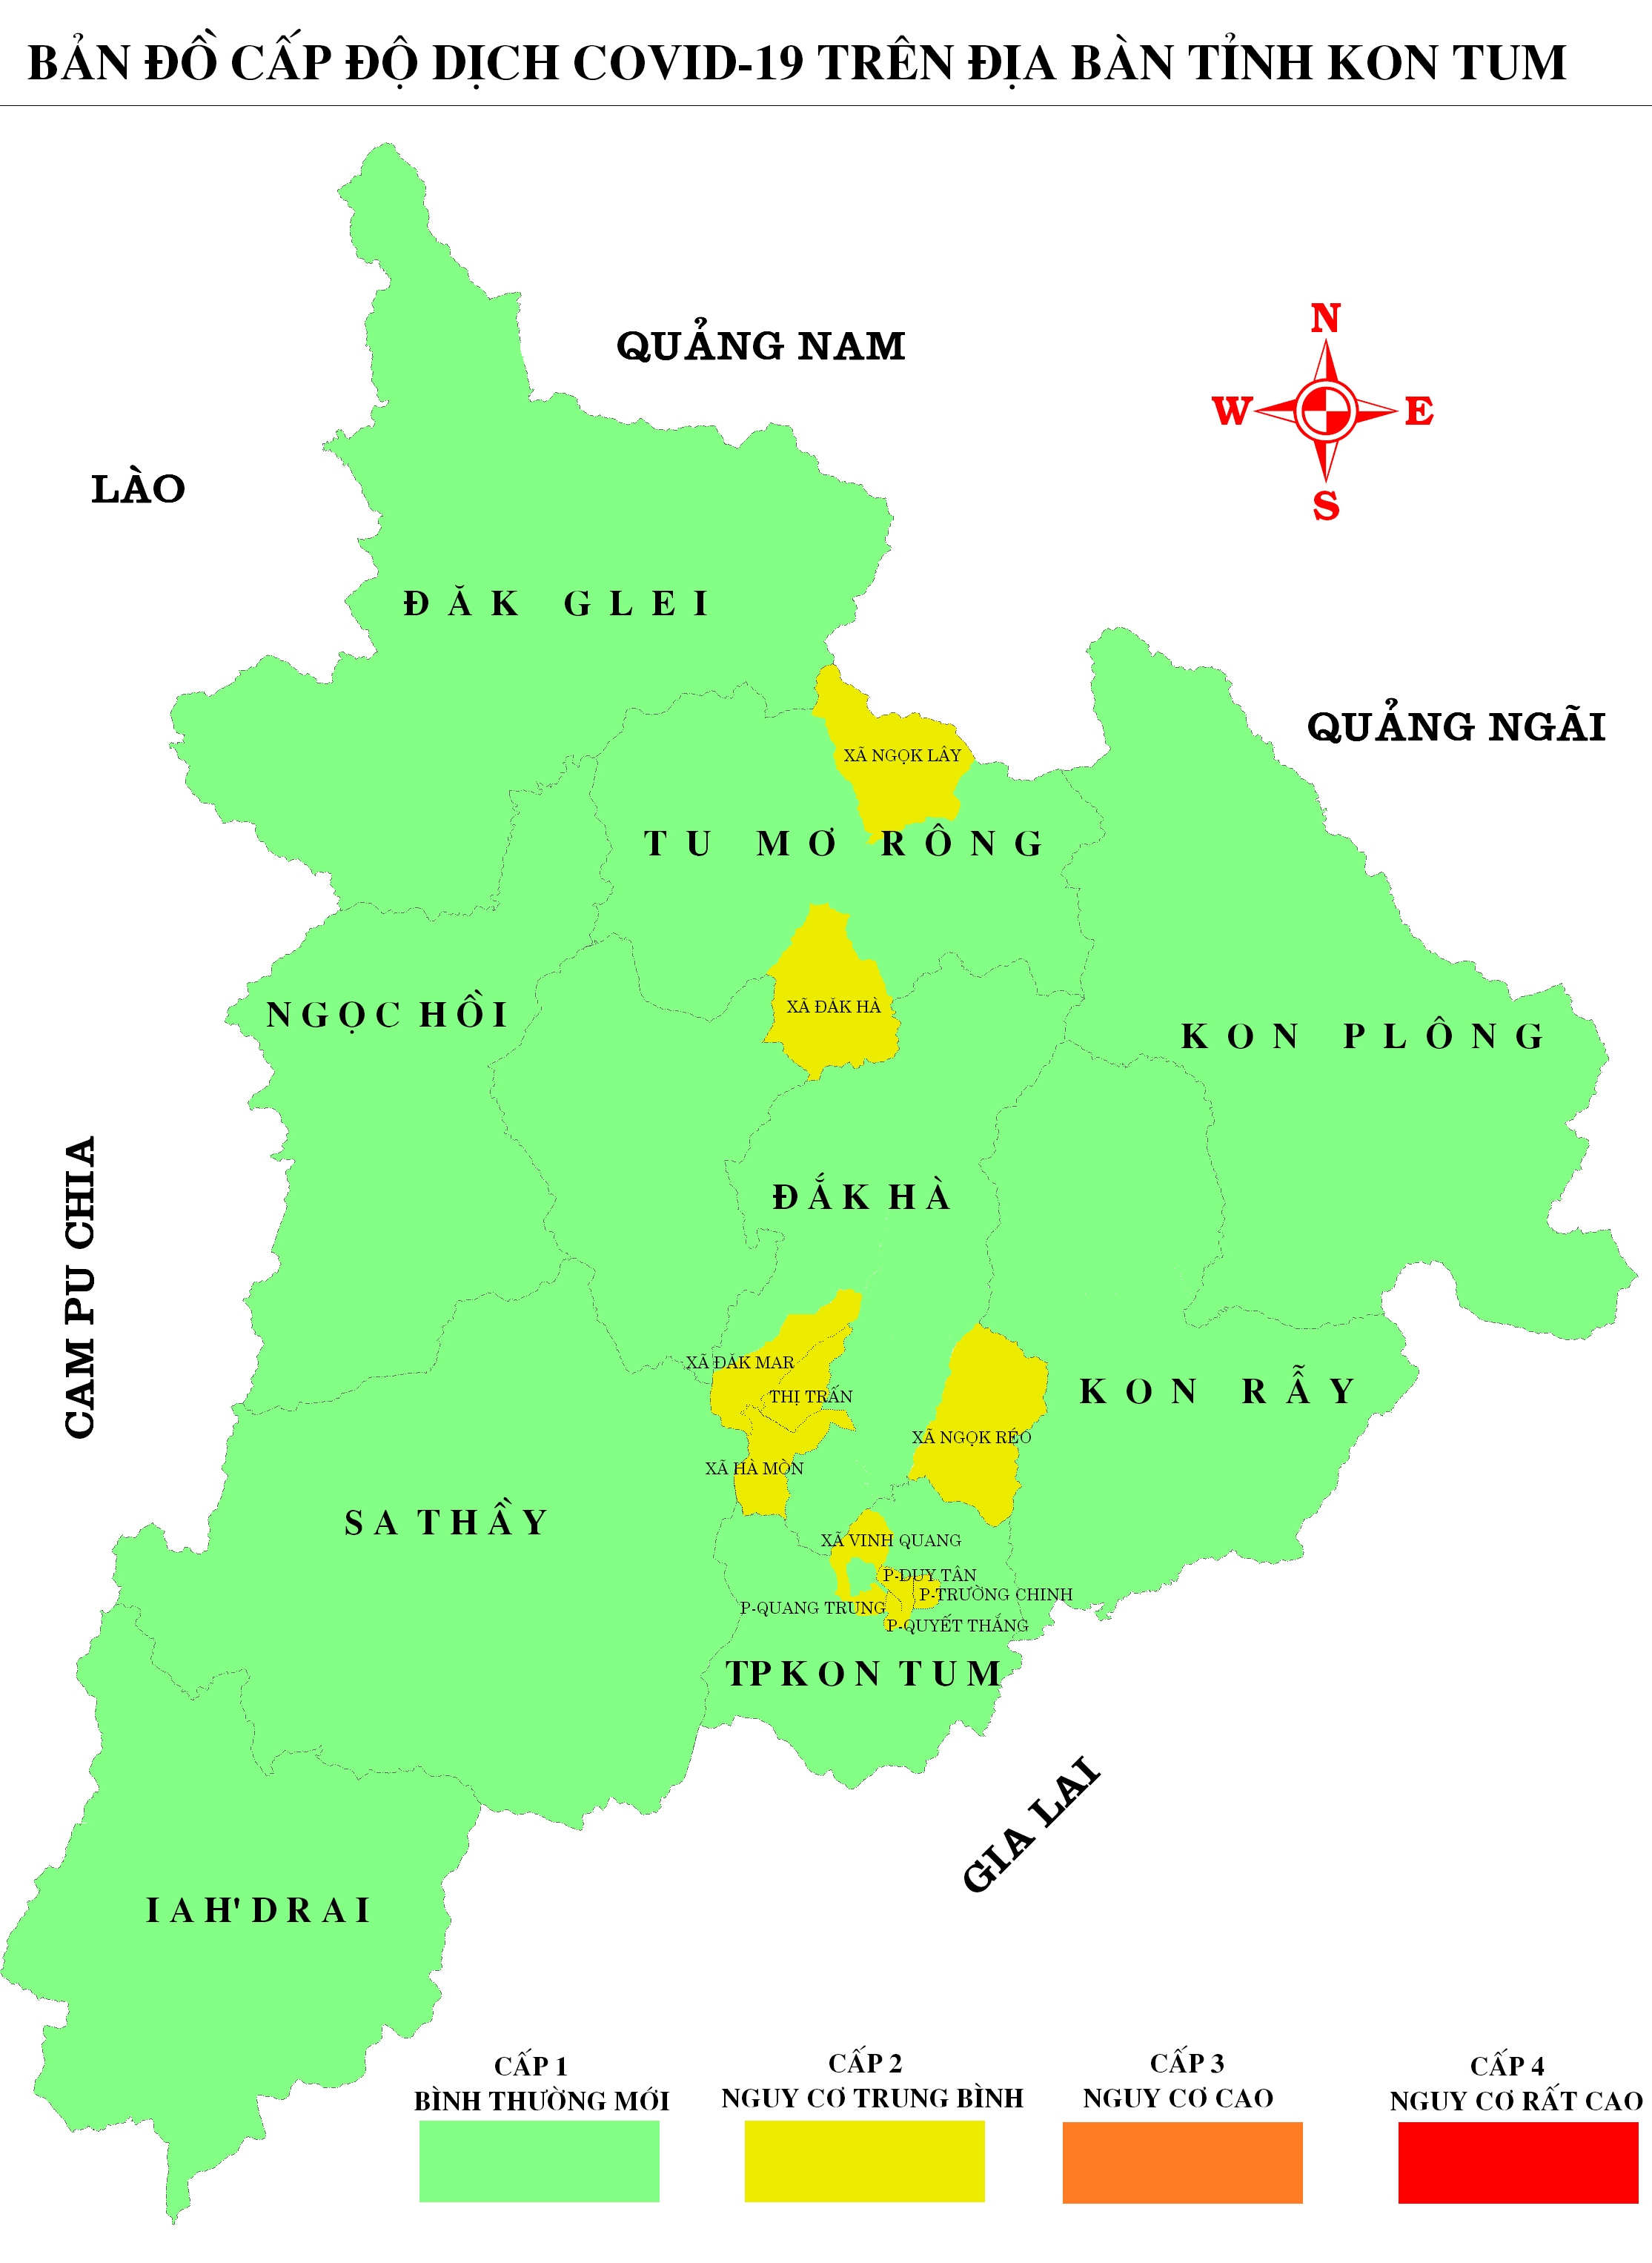 Bản đồ cấp độ dịch toàn quốc: Việt Nam đã có những đóng góp lớn trong việc kiểm soát Covid-19 trên toàn cầu. Hãy xem bản đồ cấp độ dịch toàn quốc để cập nhật các thông tin mới nhất về tình hình Covid-19 tại các tỉnh thành phía nam và góp phần cùng cả nước đánh bại đại dịch này.